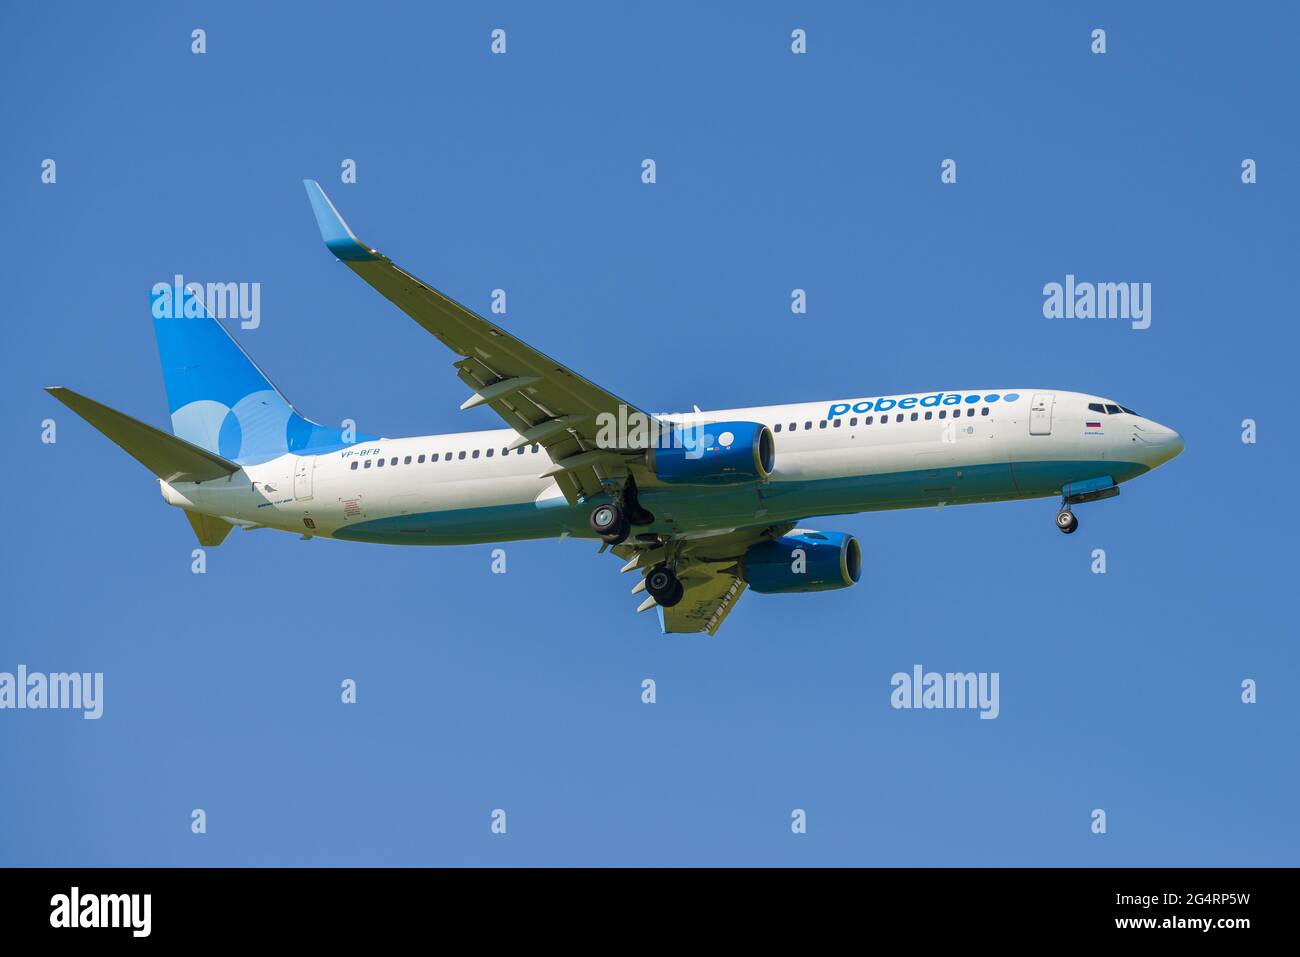 SANKT PETERSBURG, RUSSLAND - 29. MAI 2021: Boeing 737-800 (VP-BFB) der Pobeda Airlines auf Gleitpfad bei blauem wolkenlosem Himmel Stockfoto